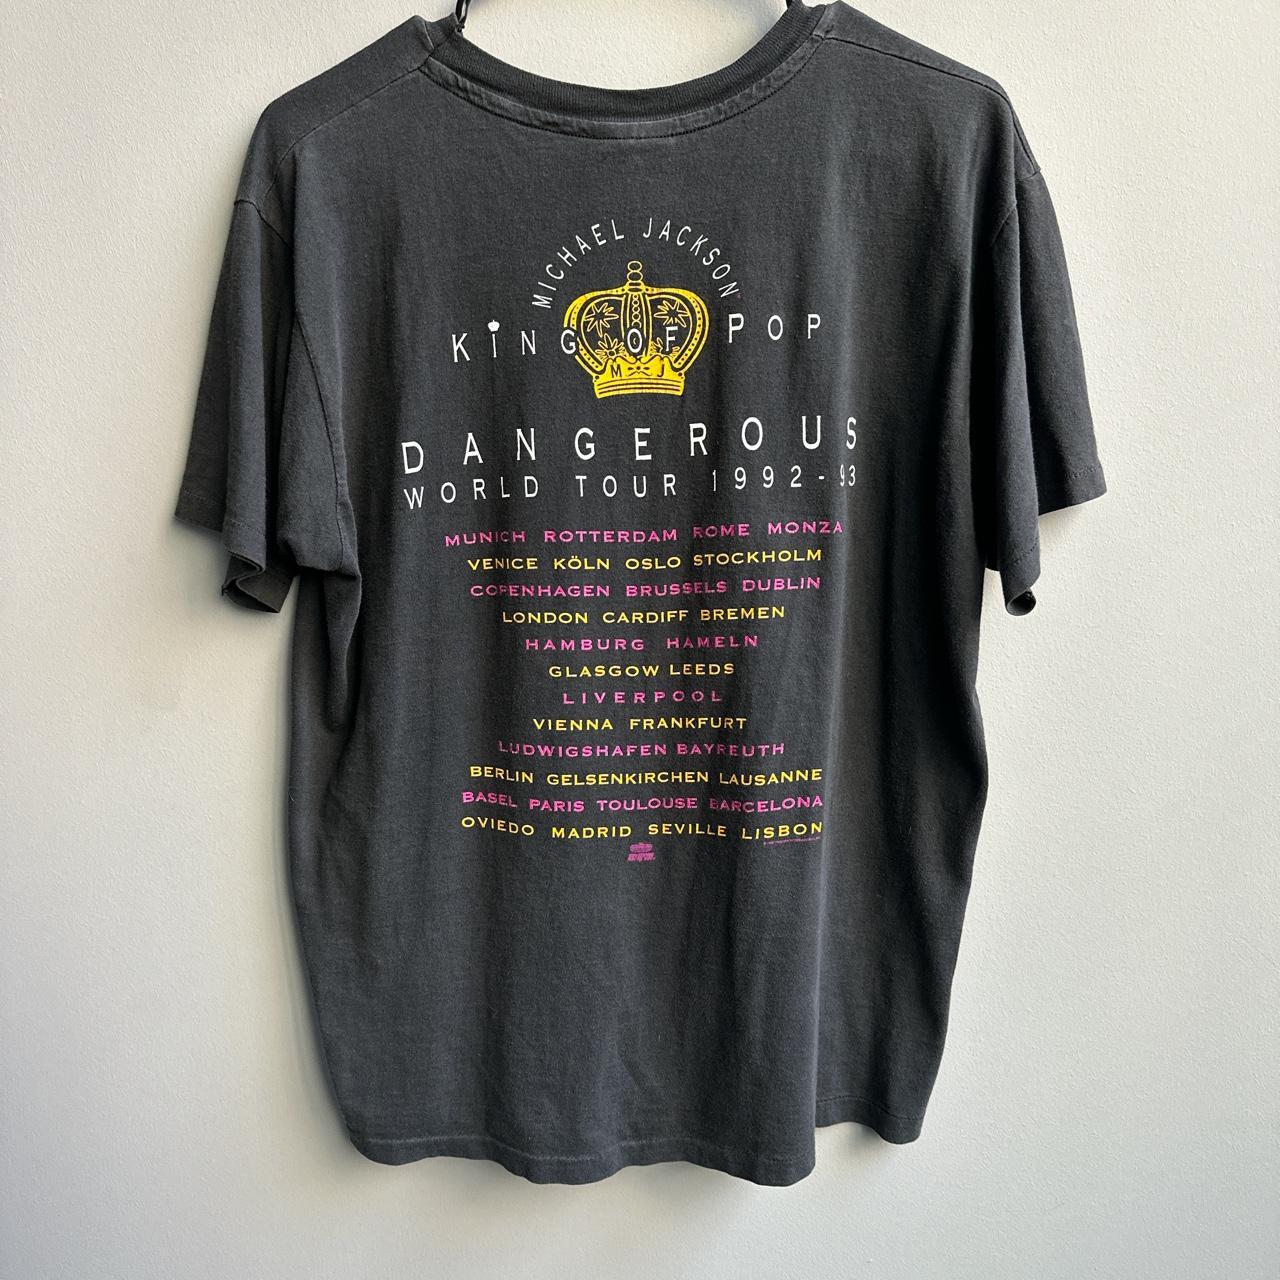 Michael Jackson Dangerous World Tour 1992-93 T-Shirt, 90s Michael